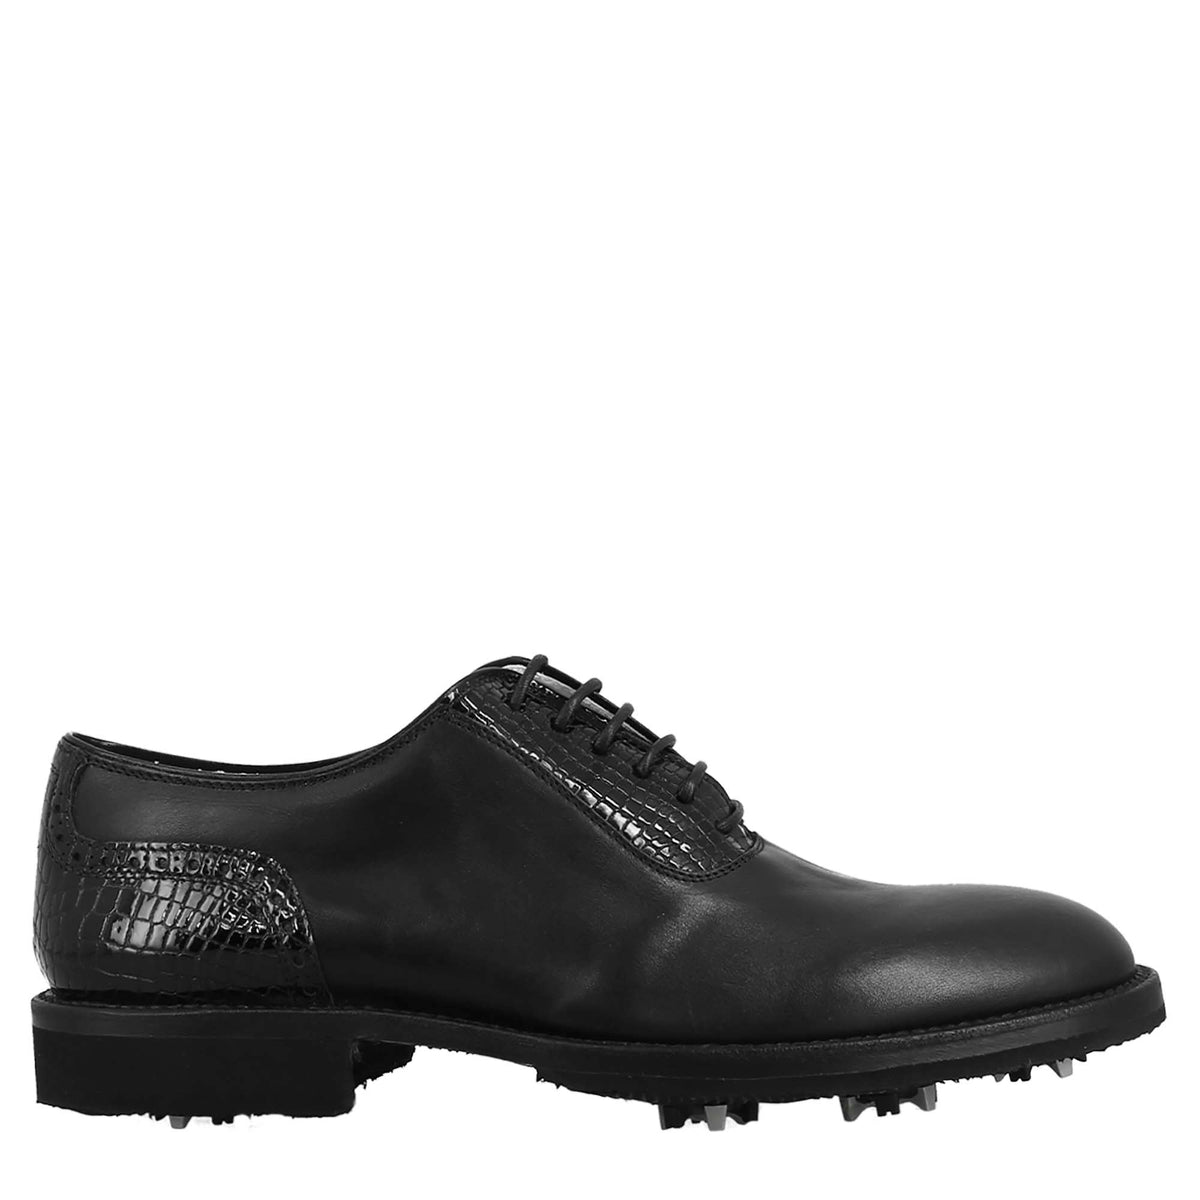 Chaussures de golf pour femmes en cuir noir, avec des détails de brogue faits à la main